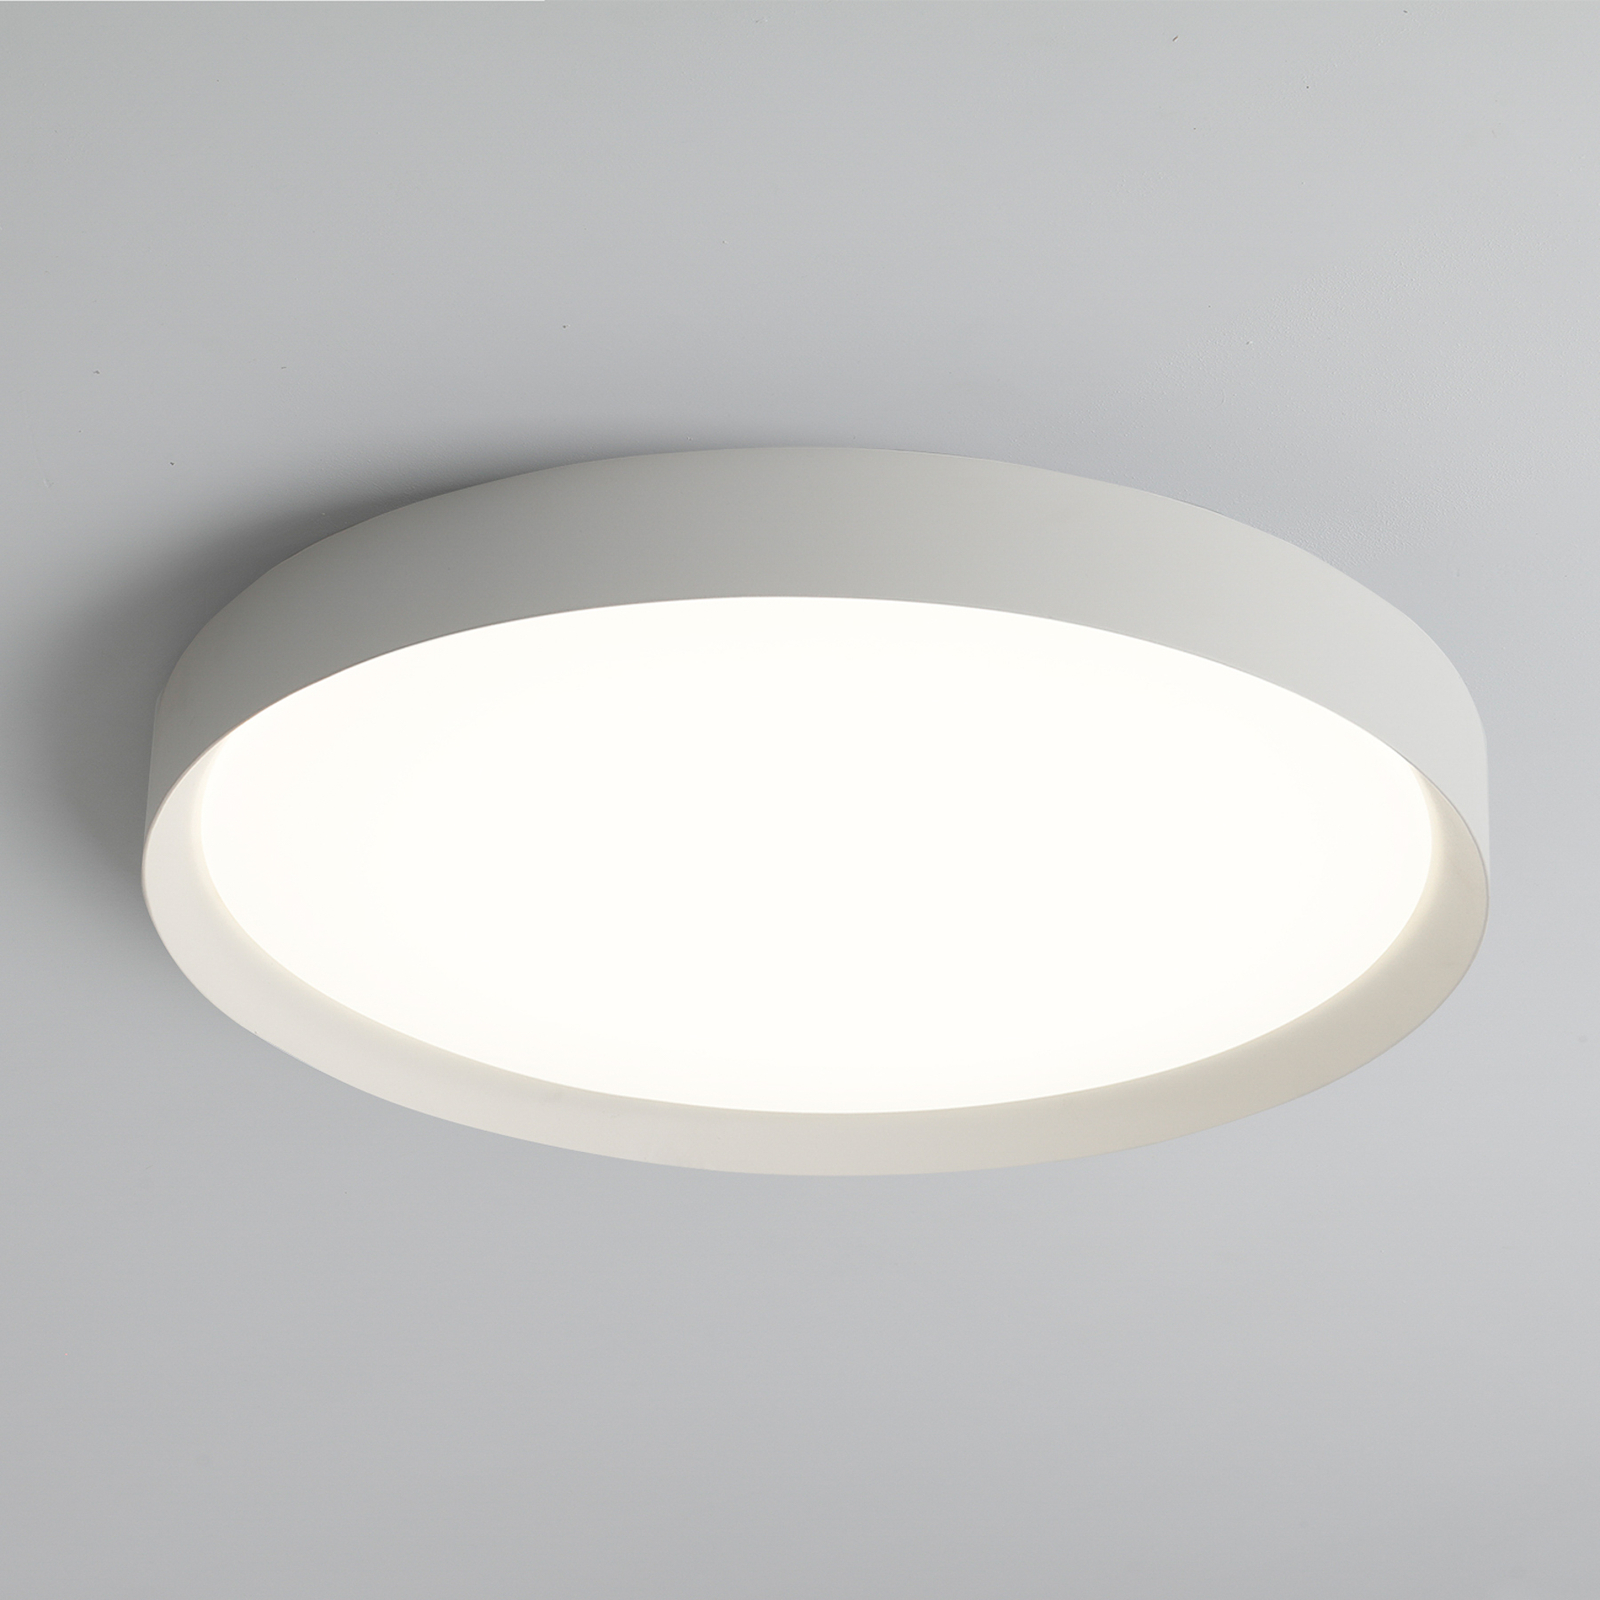 LED ceiling light Minsk, Ø 60 cm, Casambi, 42 W, white